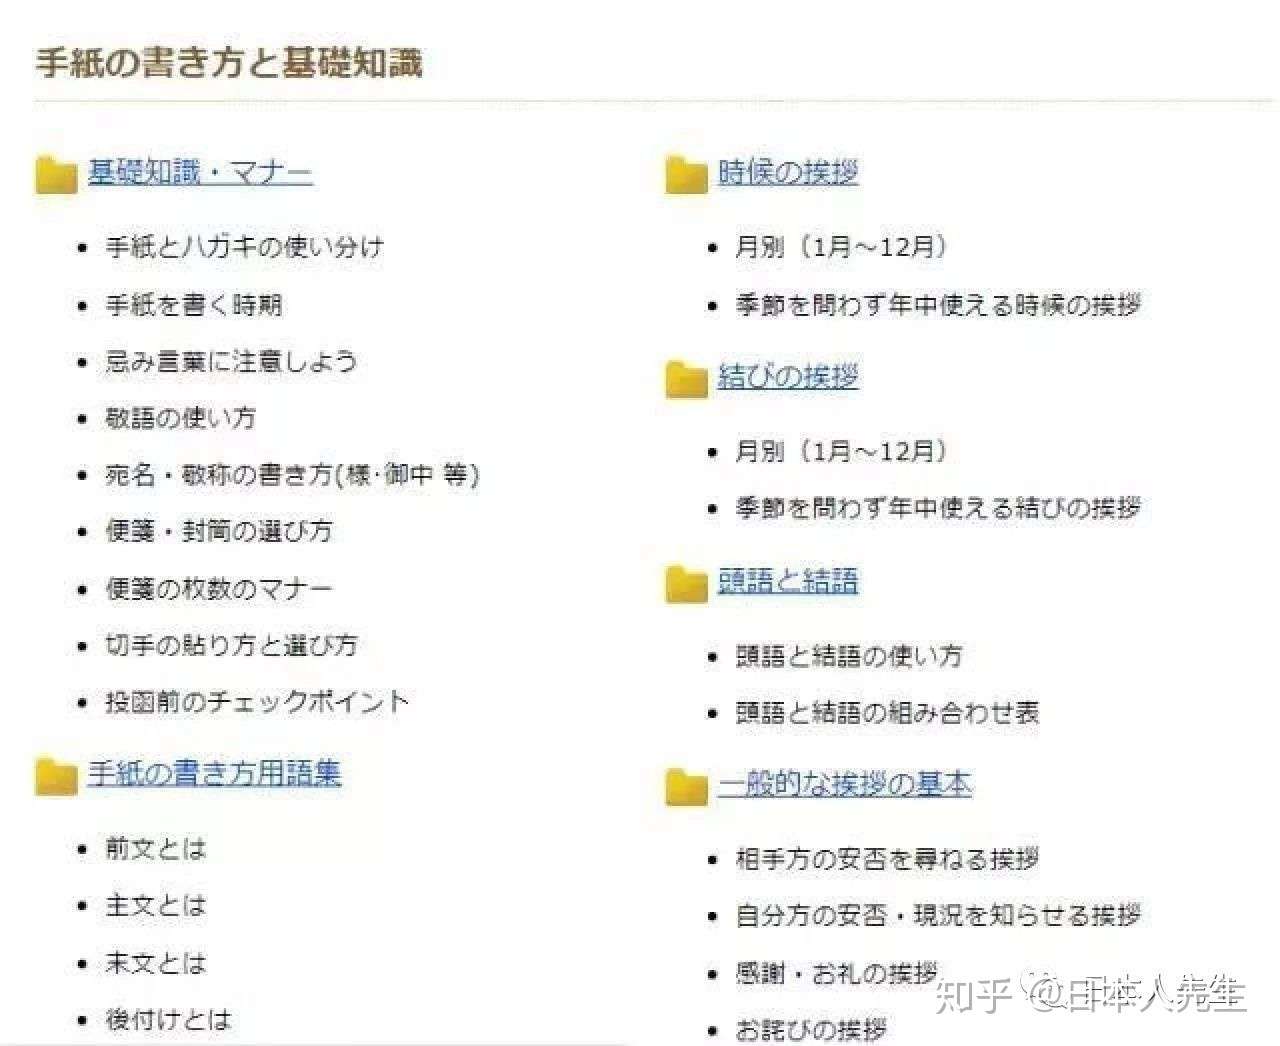 日语大神分享珍藏的日语网站 听力 口语有救了 知乎